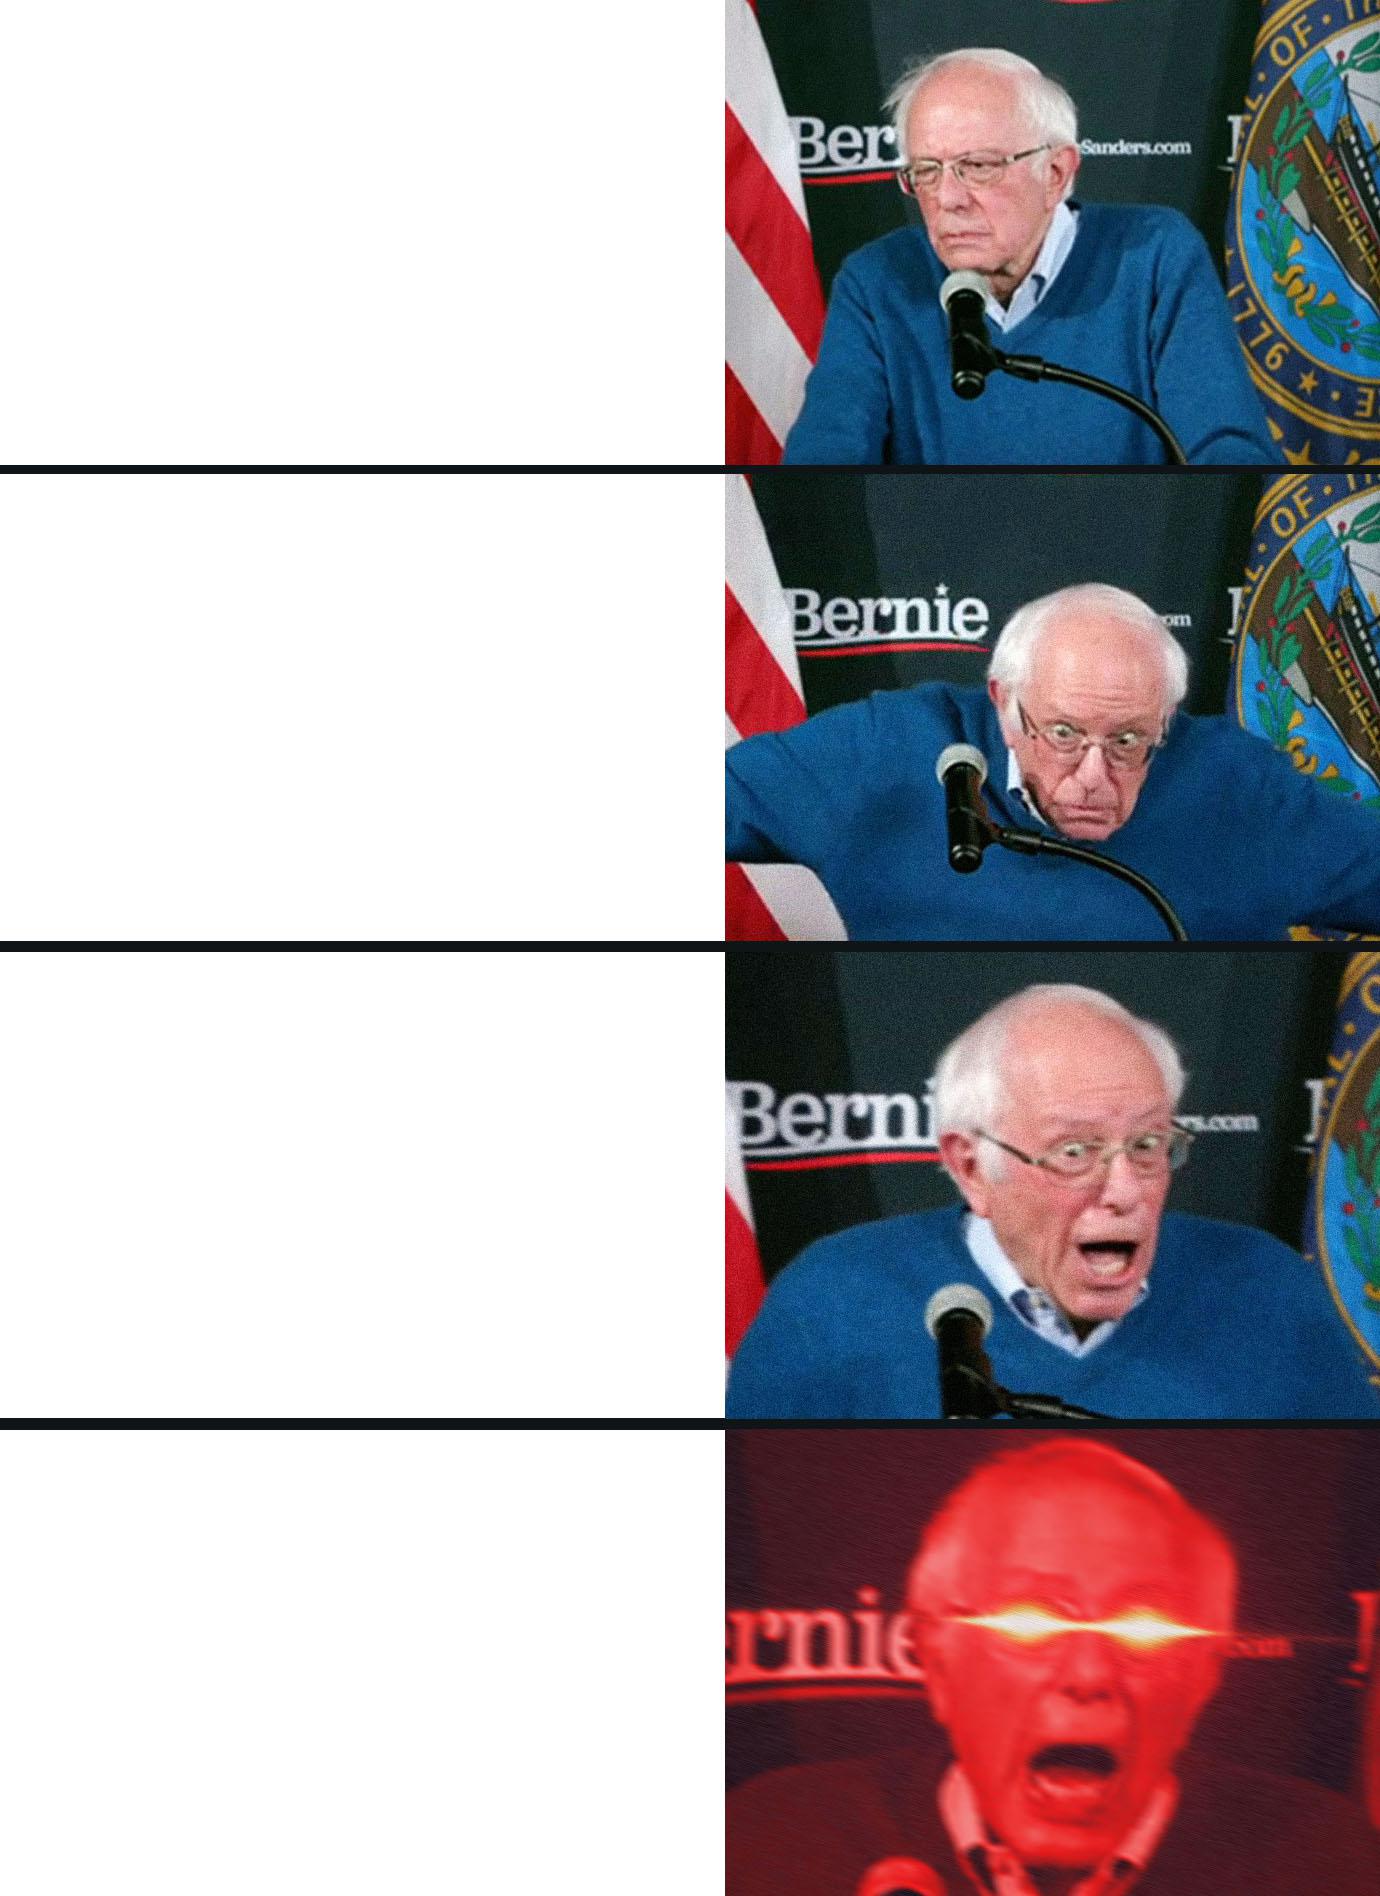 Bernie Sanders reaction (nuked) Memes Imgflip